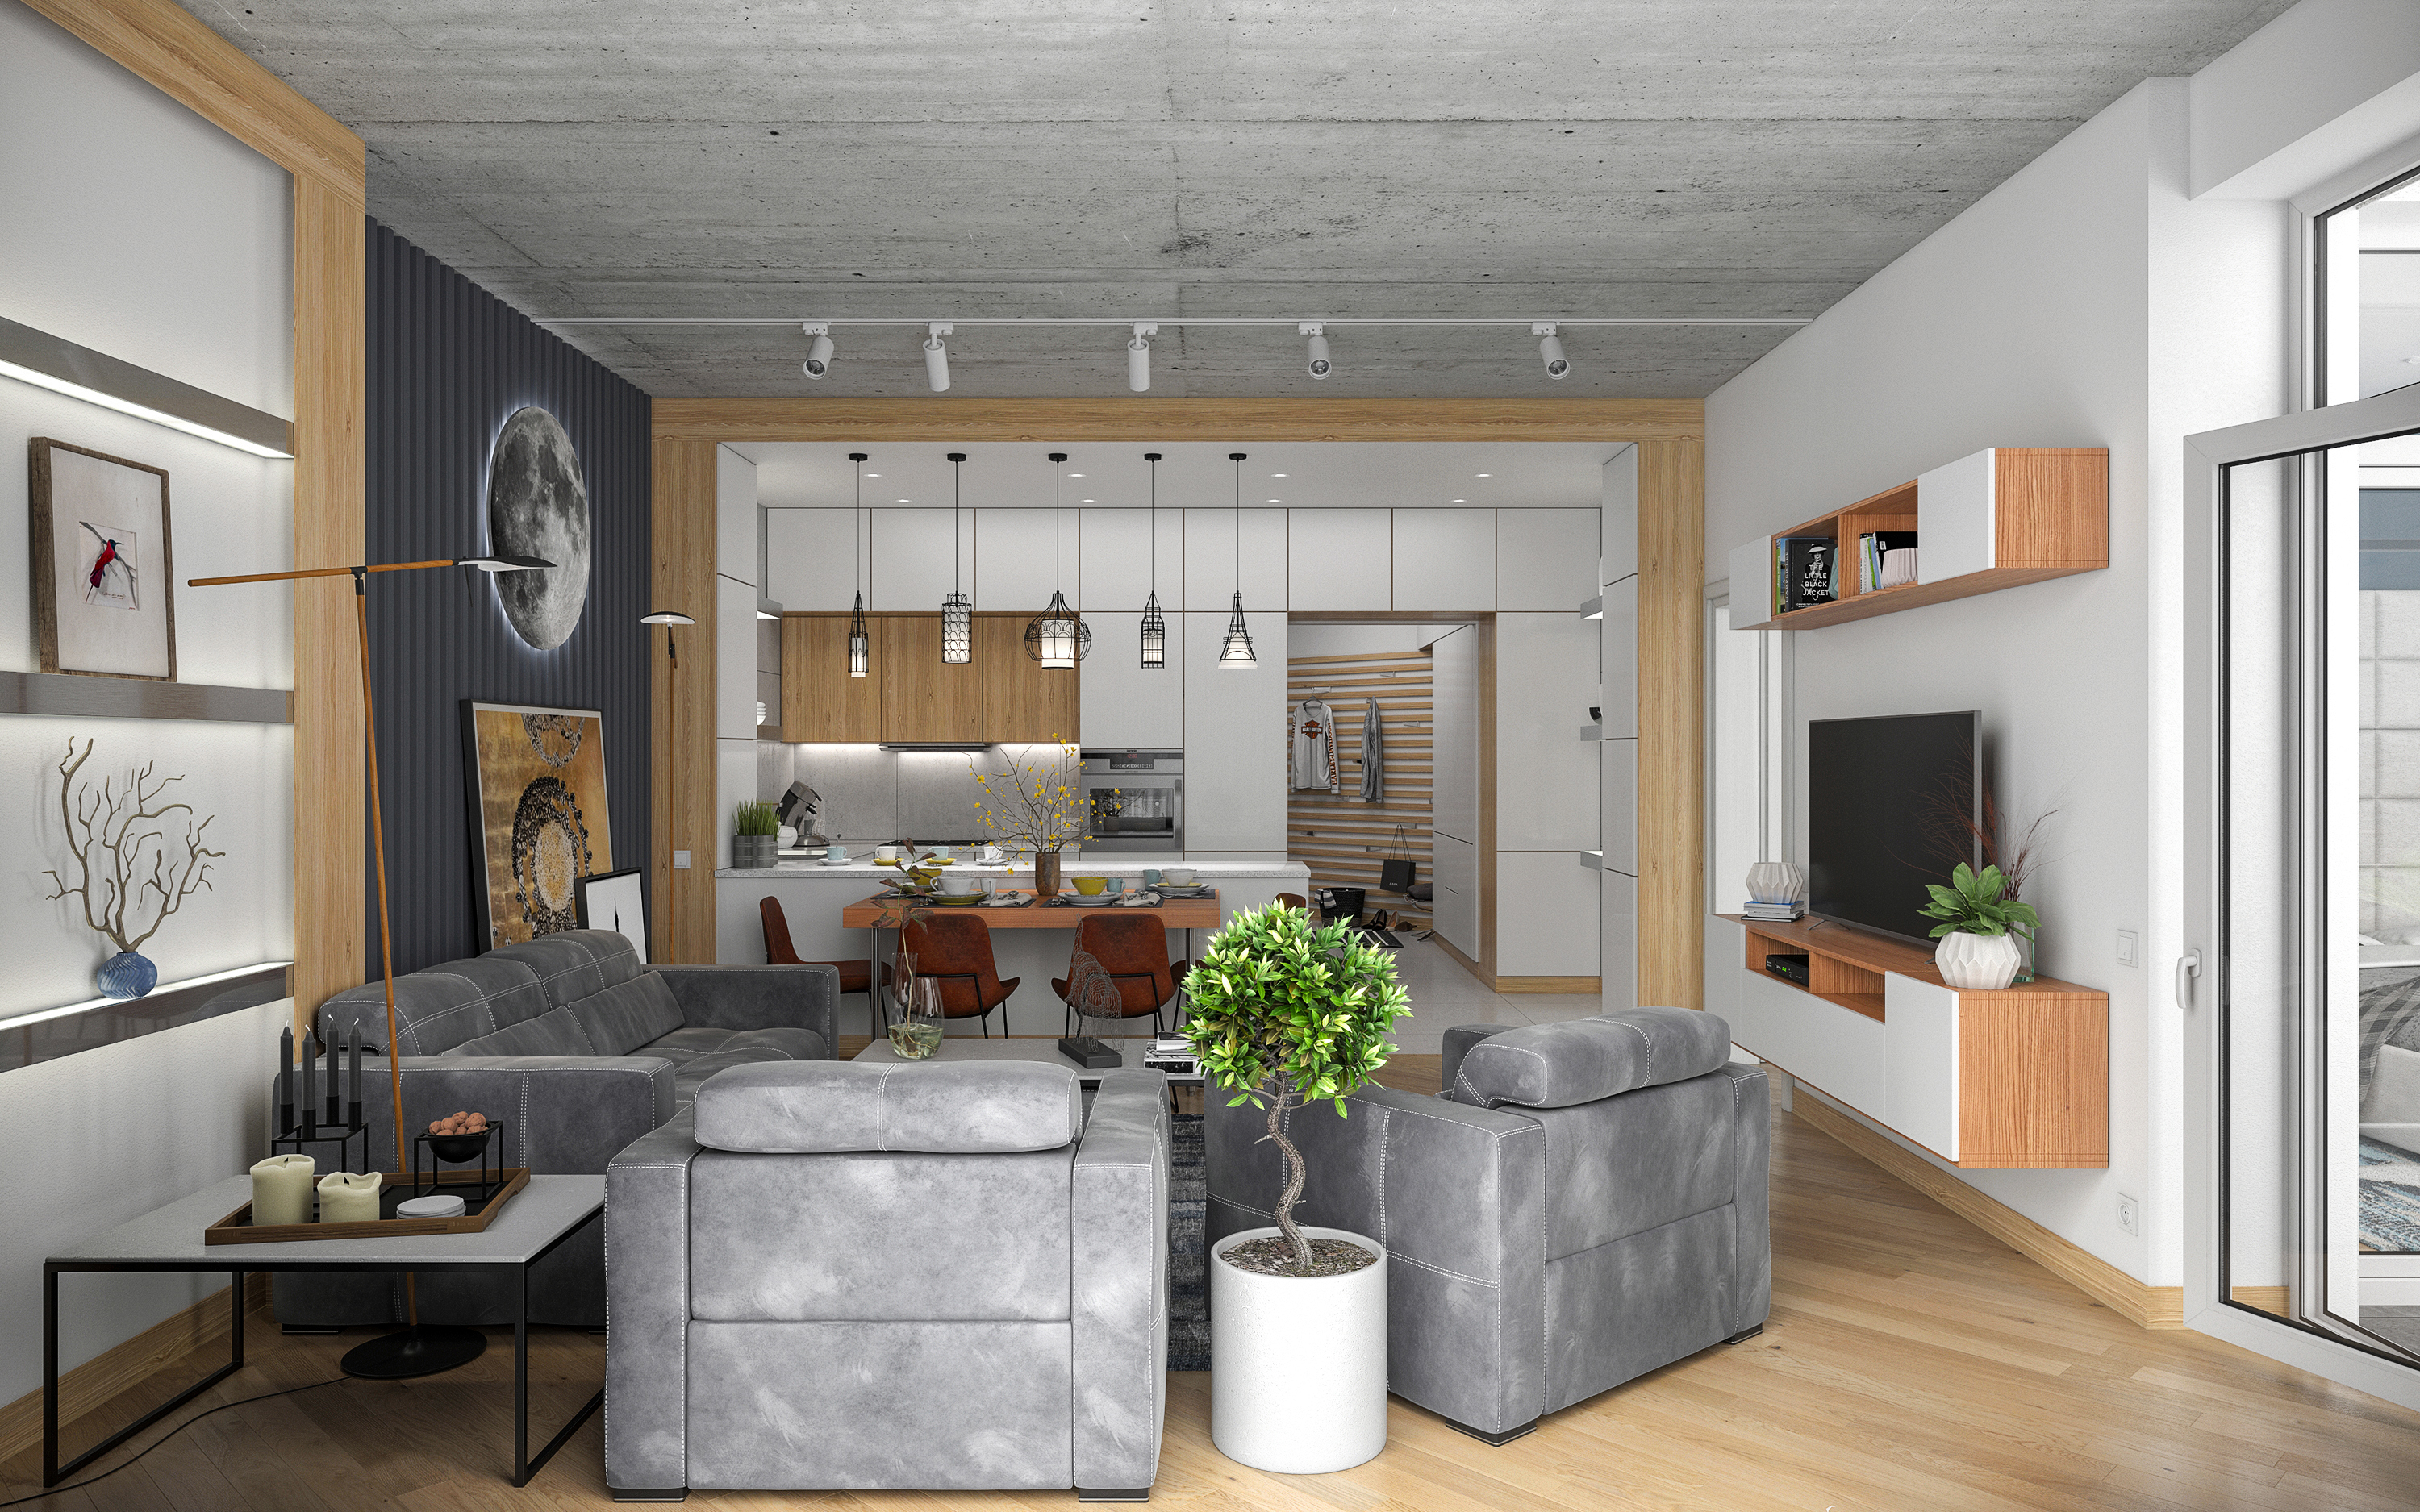 Appartamento con una camera da letto S68 in 3d max corona render immagine